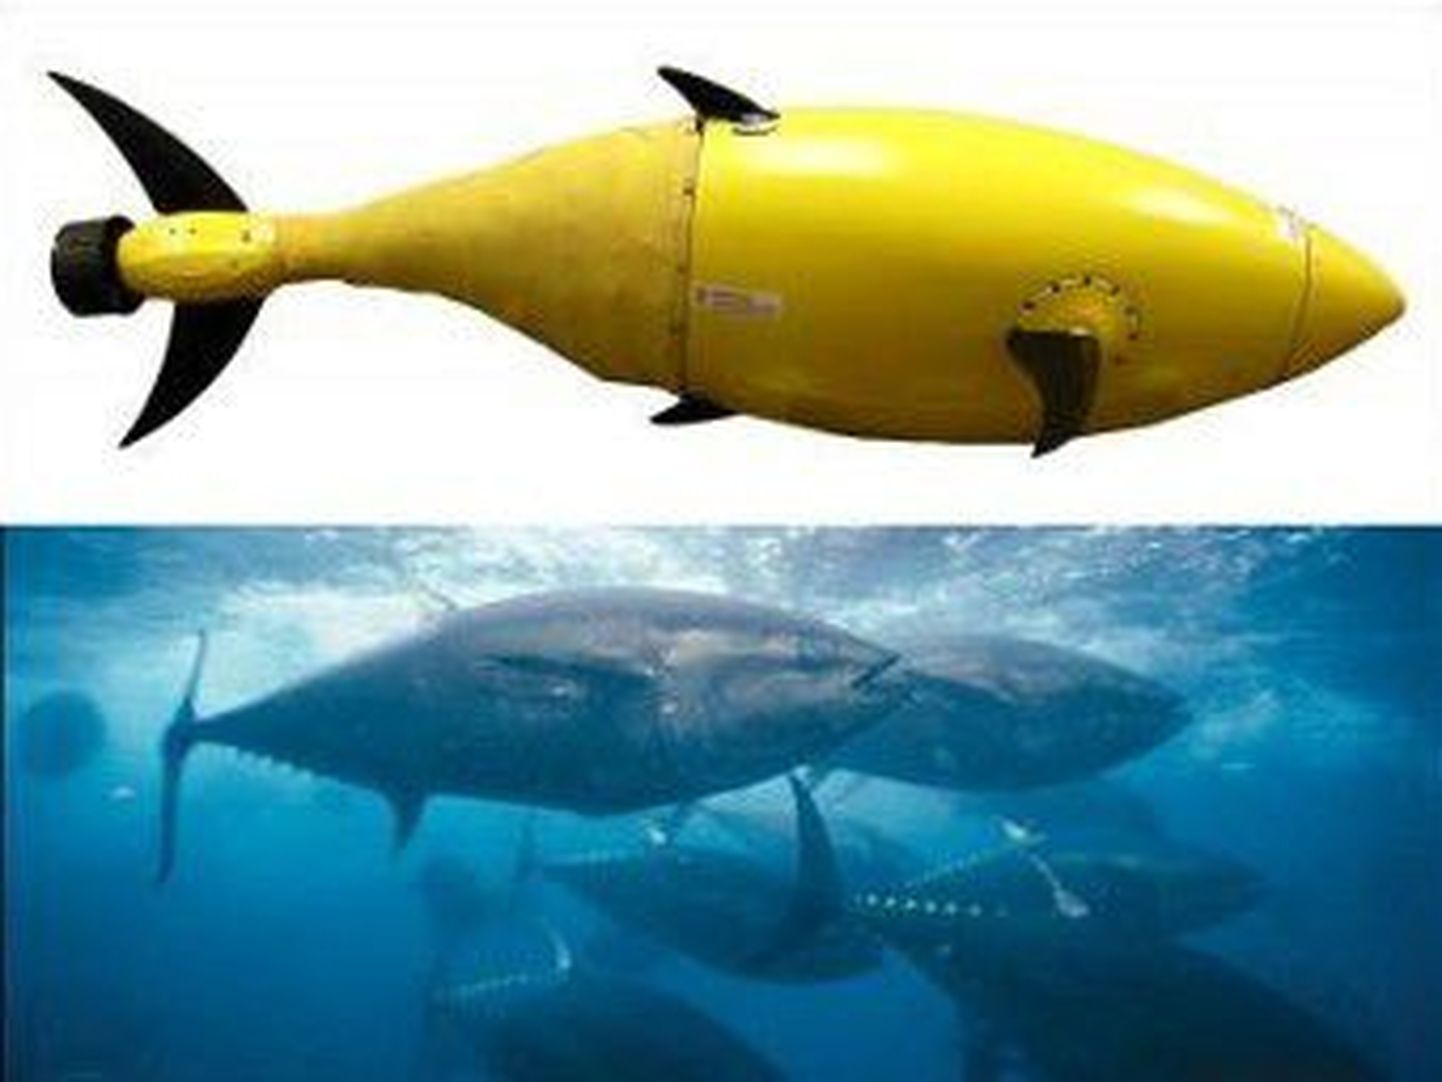 Прототип робота-тунца и настоящие тунцы